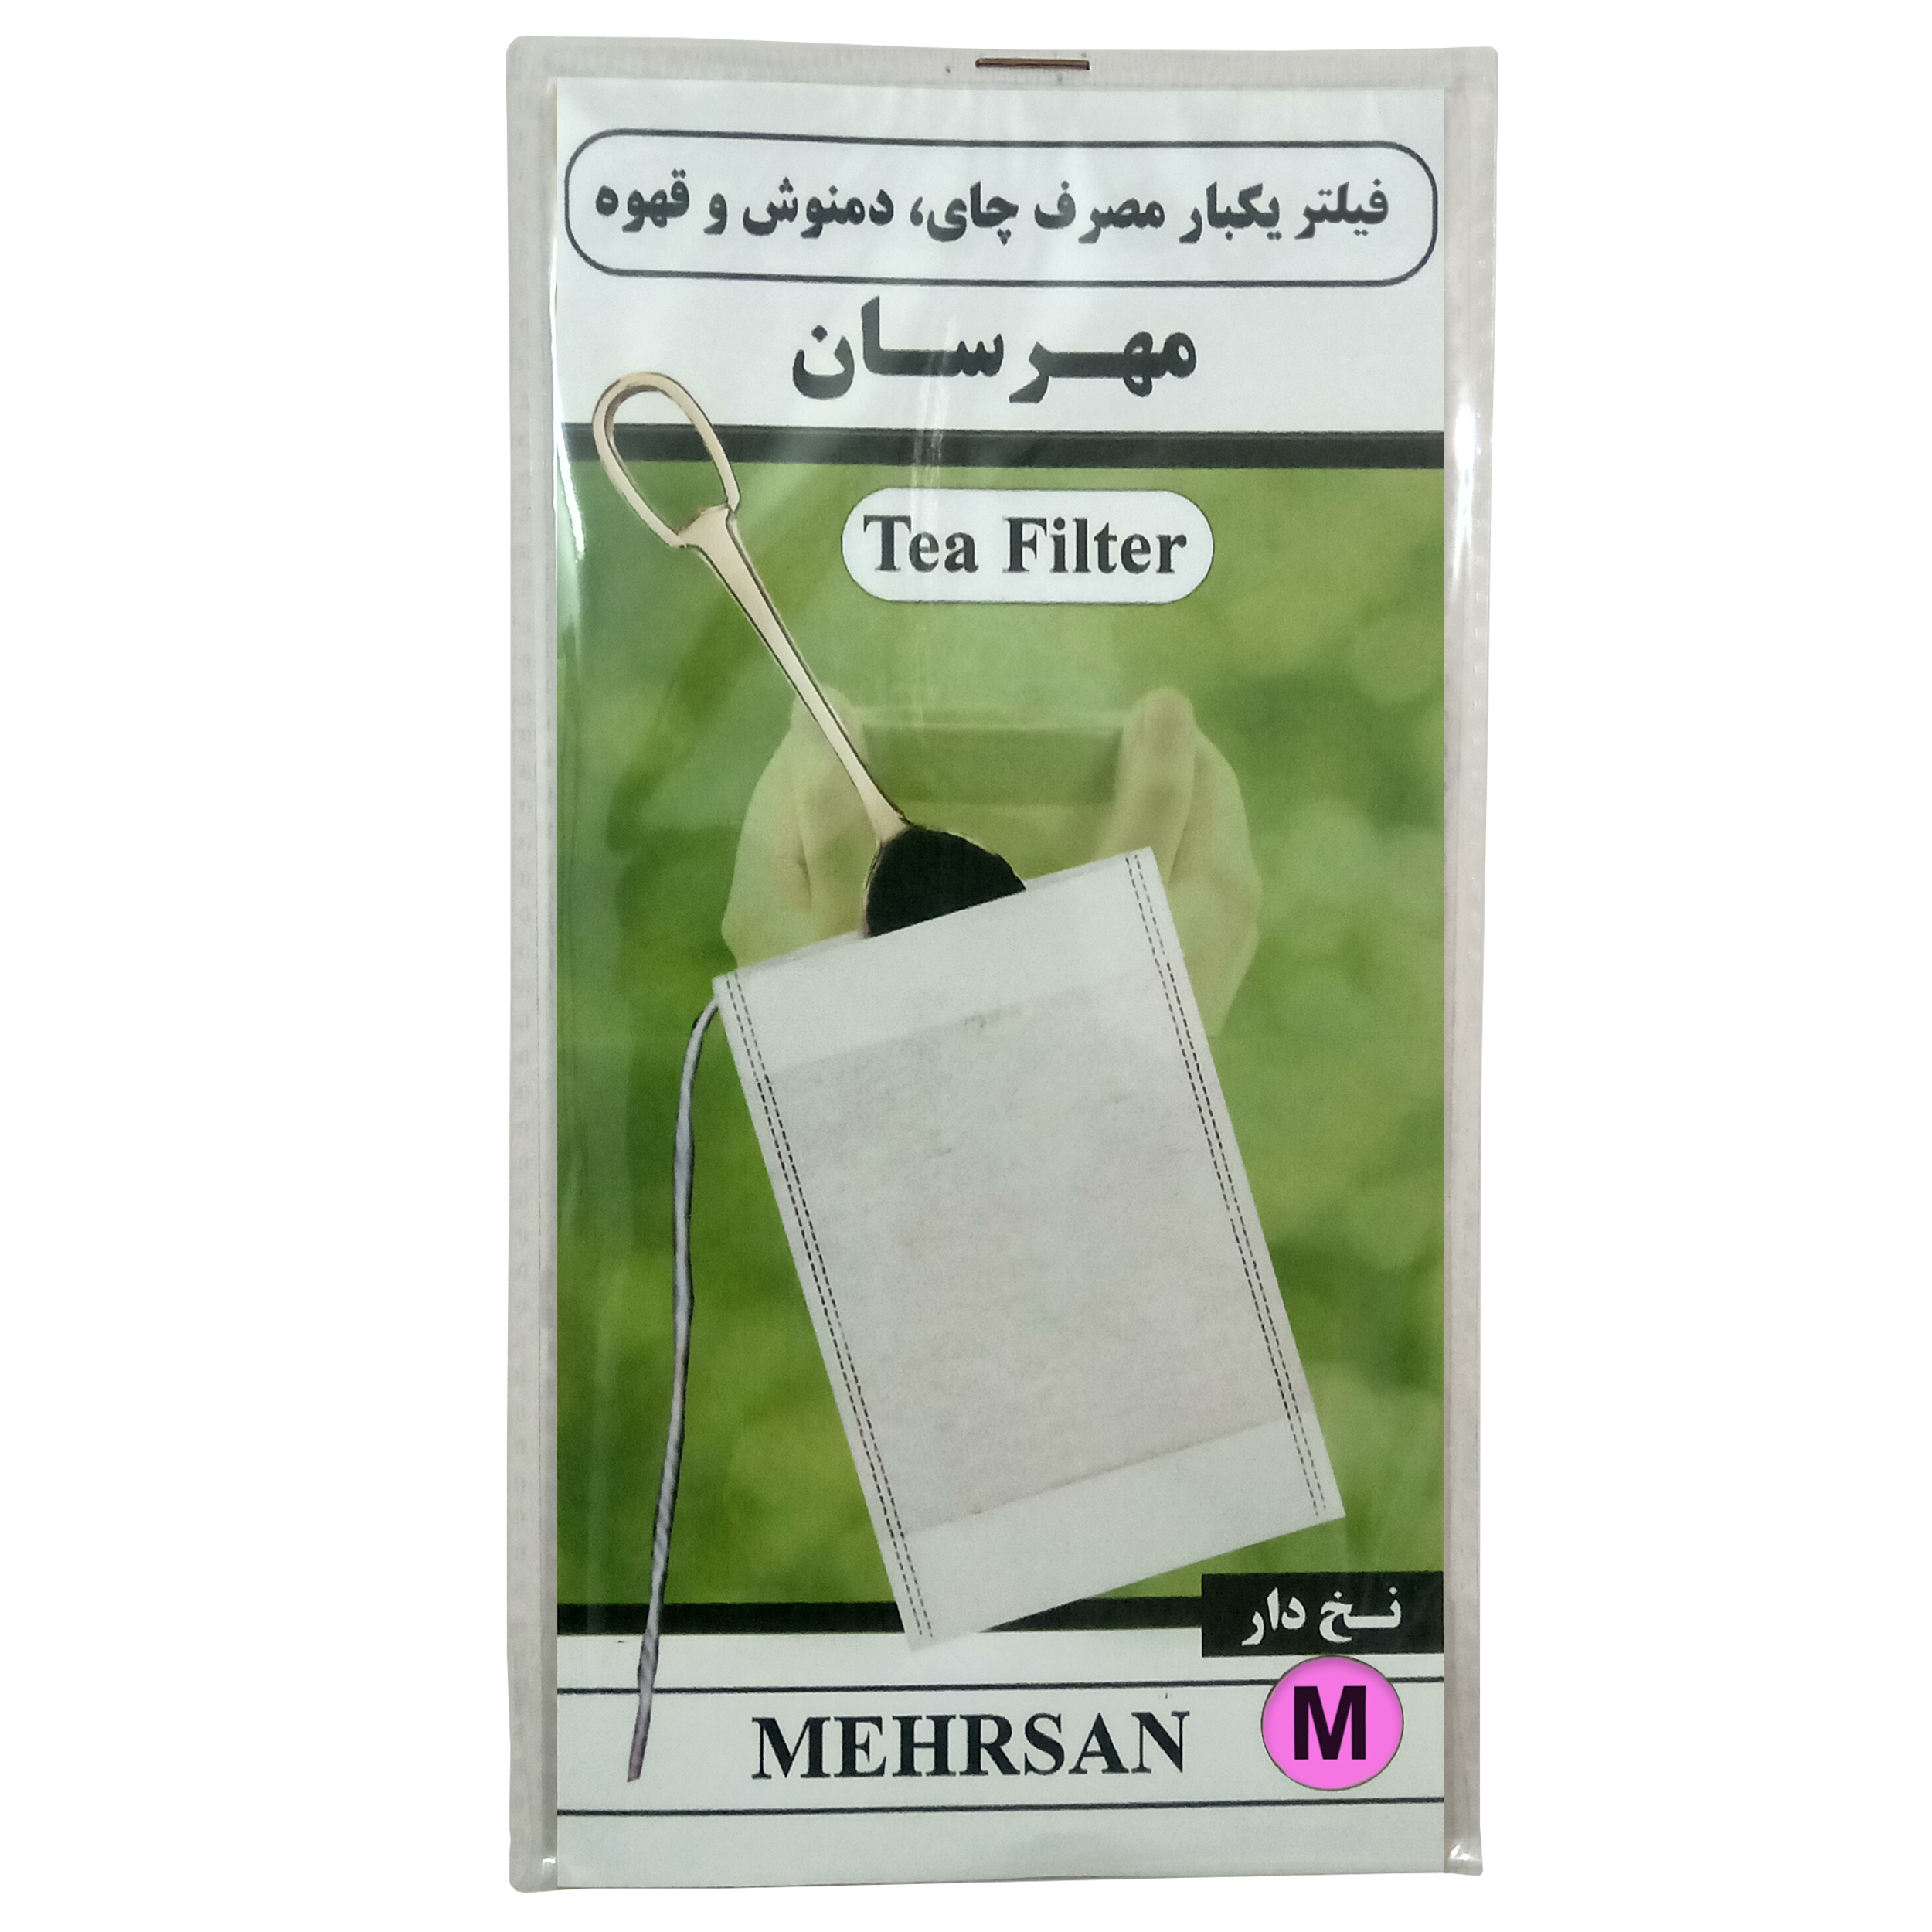 فیلتر چای مهرسان مدل M-100 بسته 100 عددی